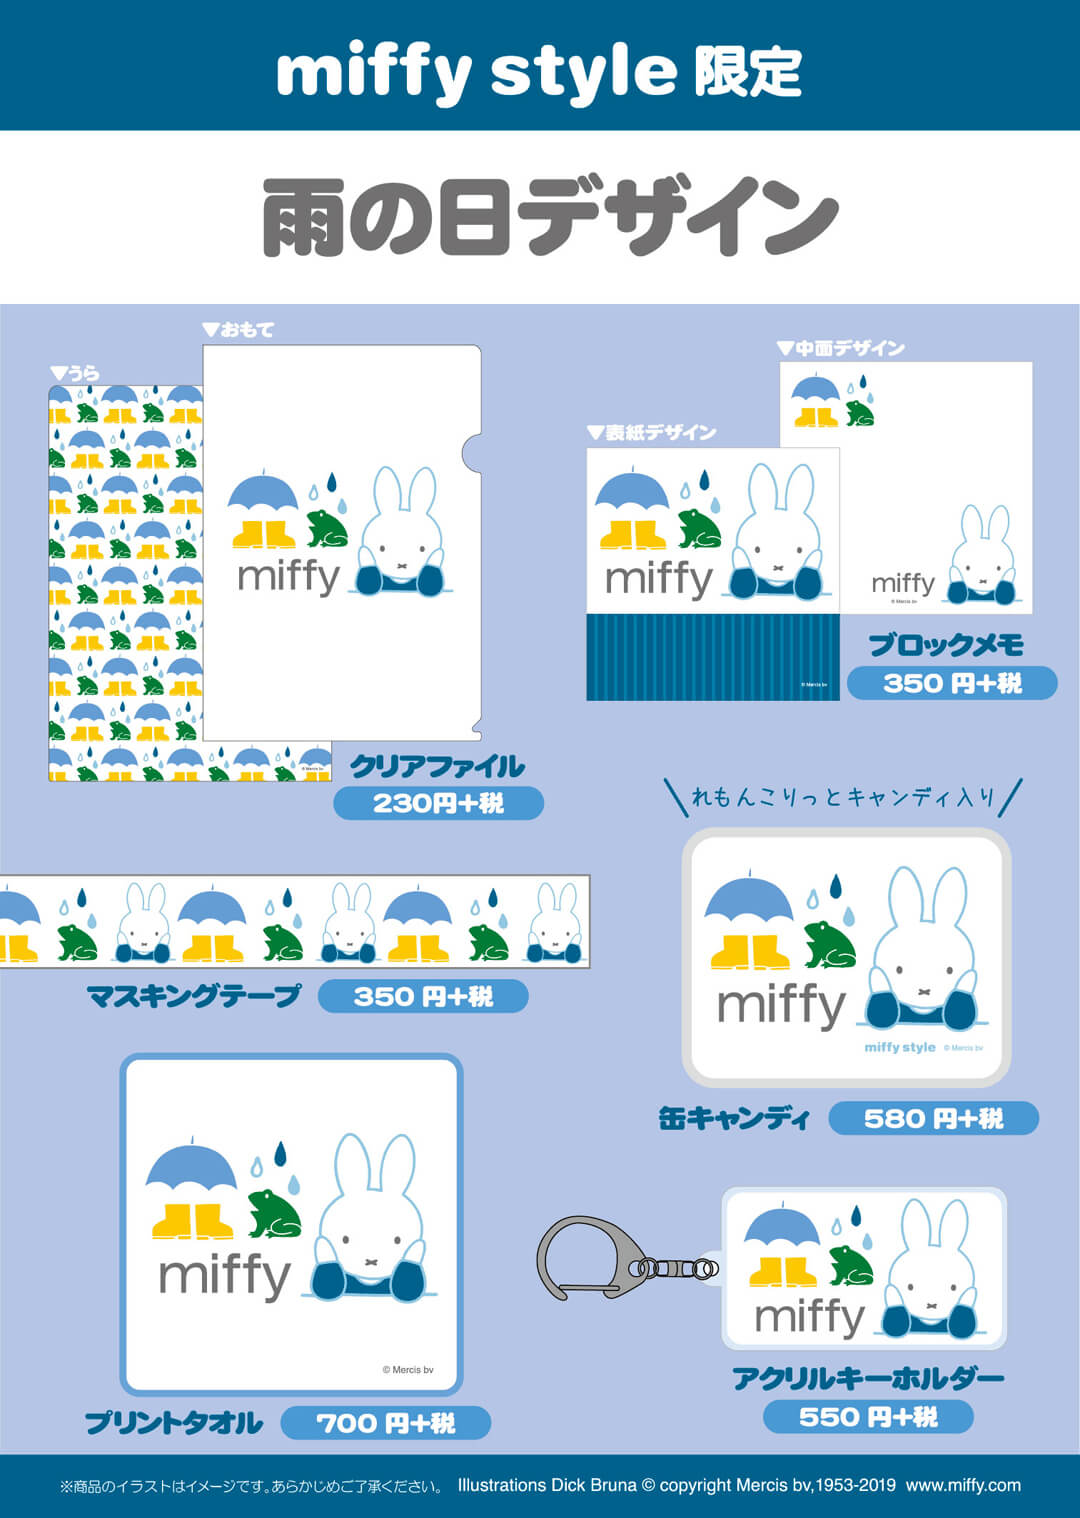 5月3日（金・祝）発売予定!miffy style限定 レインコートぬいぐるみ＆雨の日雑貨 | キデイランドへようこそ！